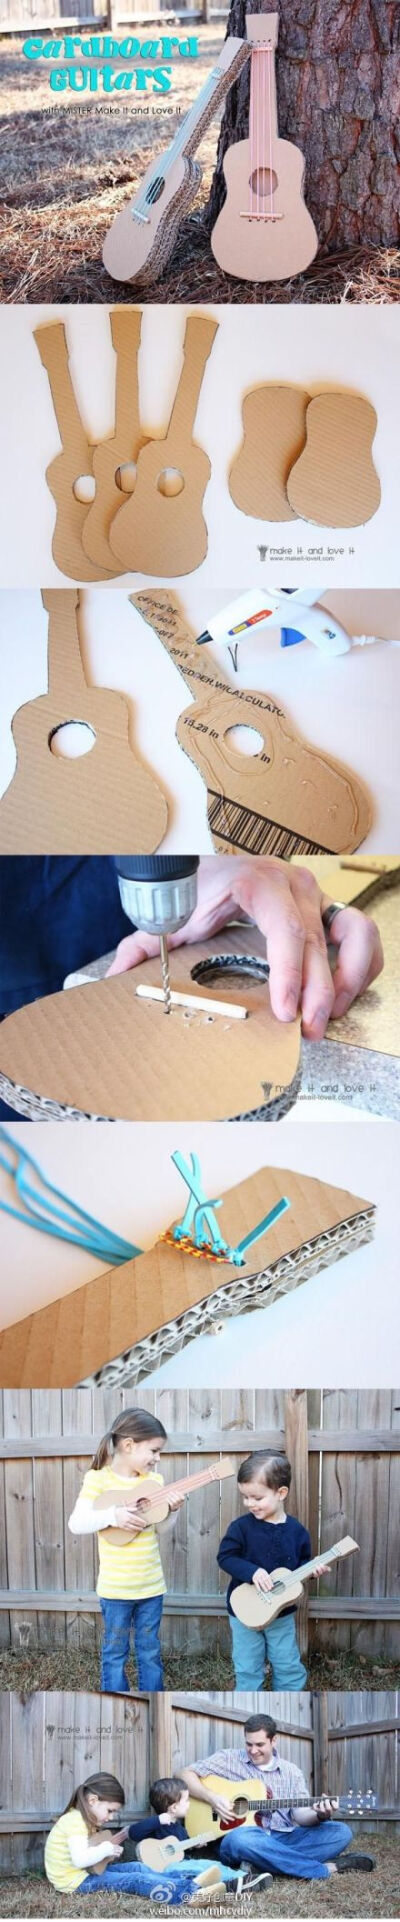 哈！瓦楞纸做的吉他，好创意~——更多有趣内容，请关注@美好创意DIY （http://t.cn/zOR4l2D）